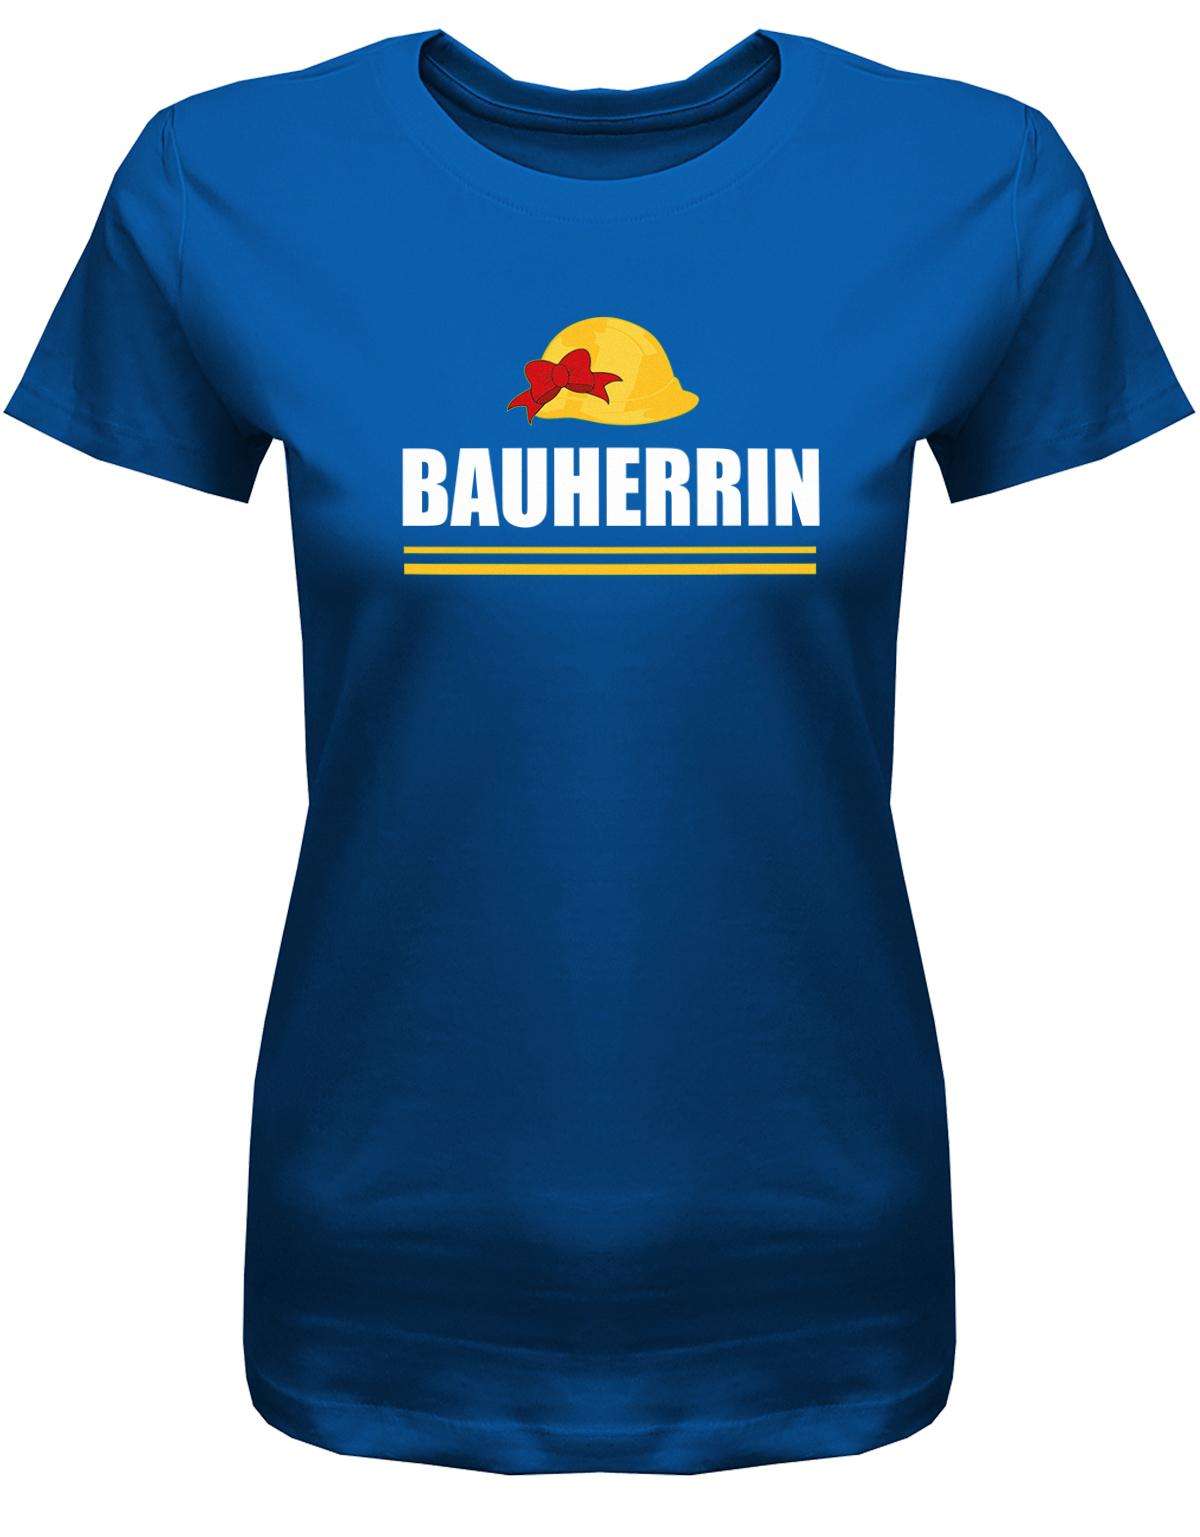 Bauherrin-Bauhelm-Shirt-Damen-royalblau